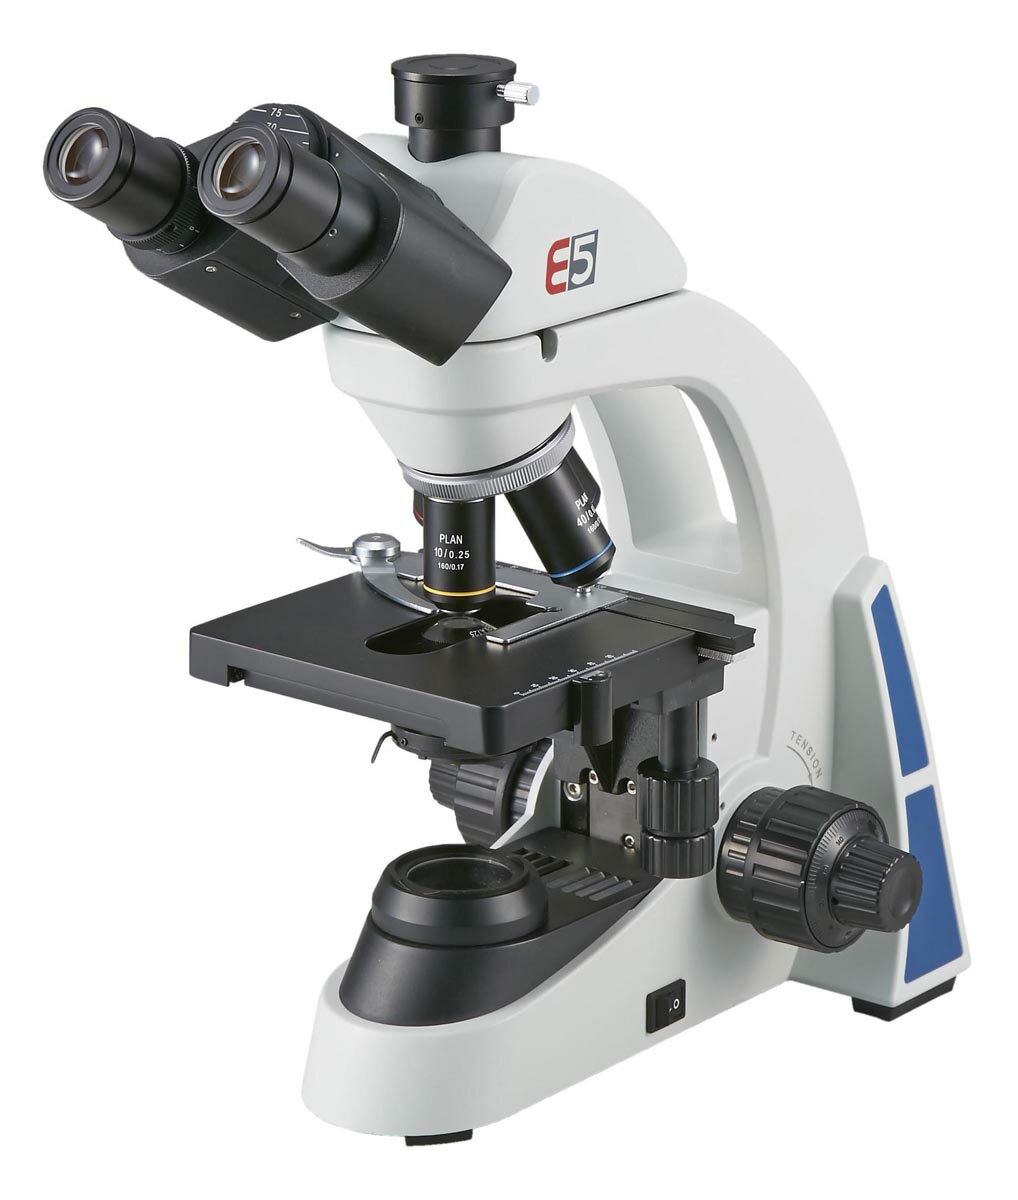 ケニス ケニス生物顕微鏡 E5-4B